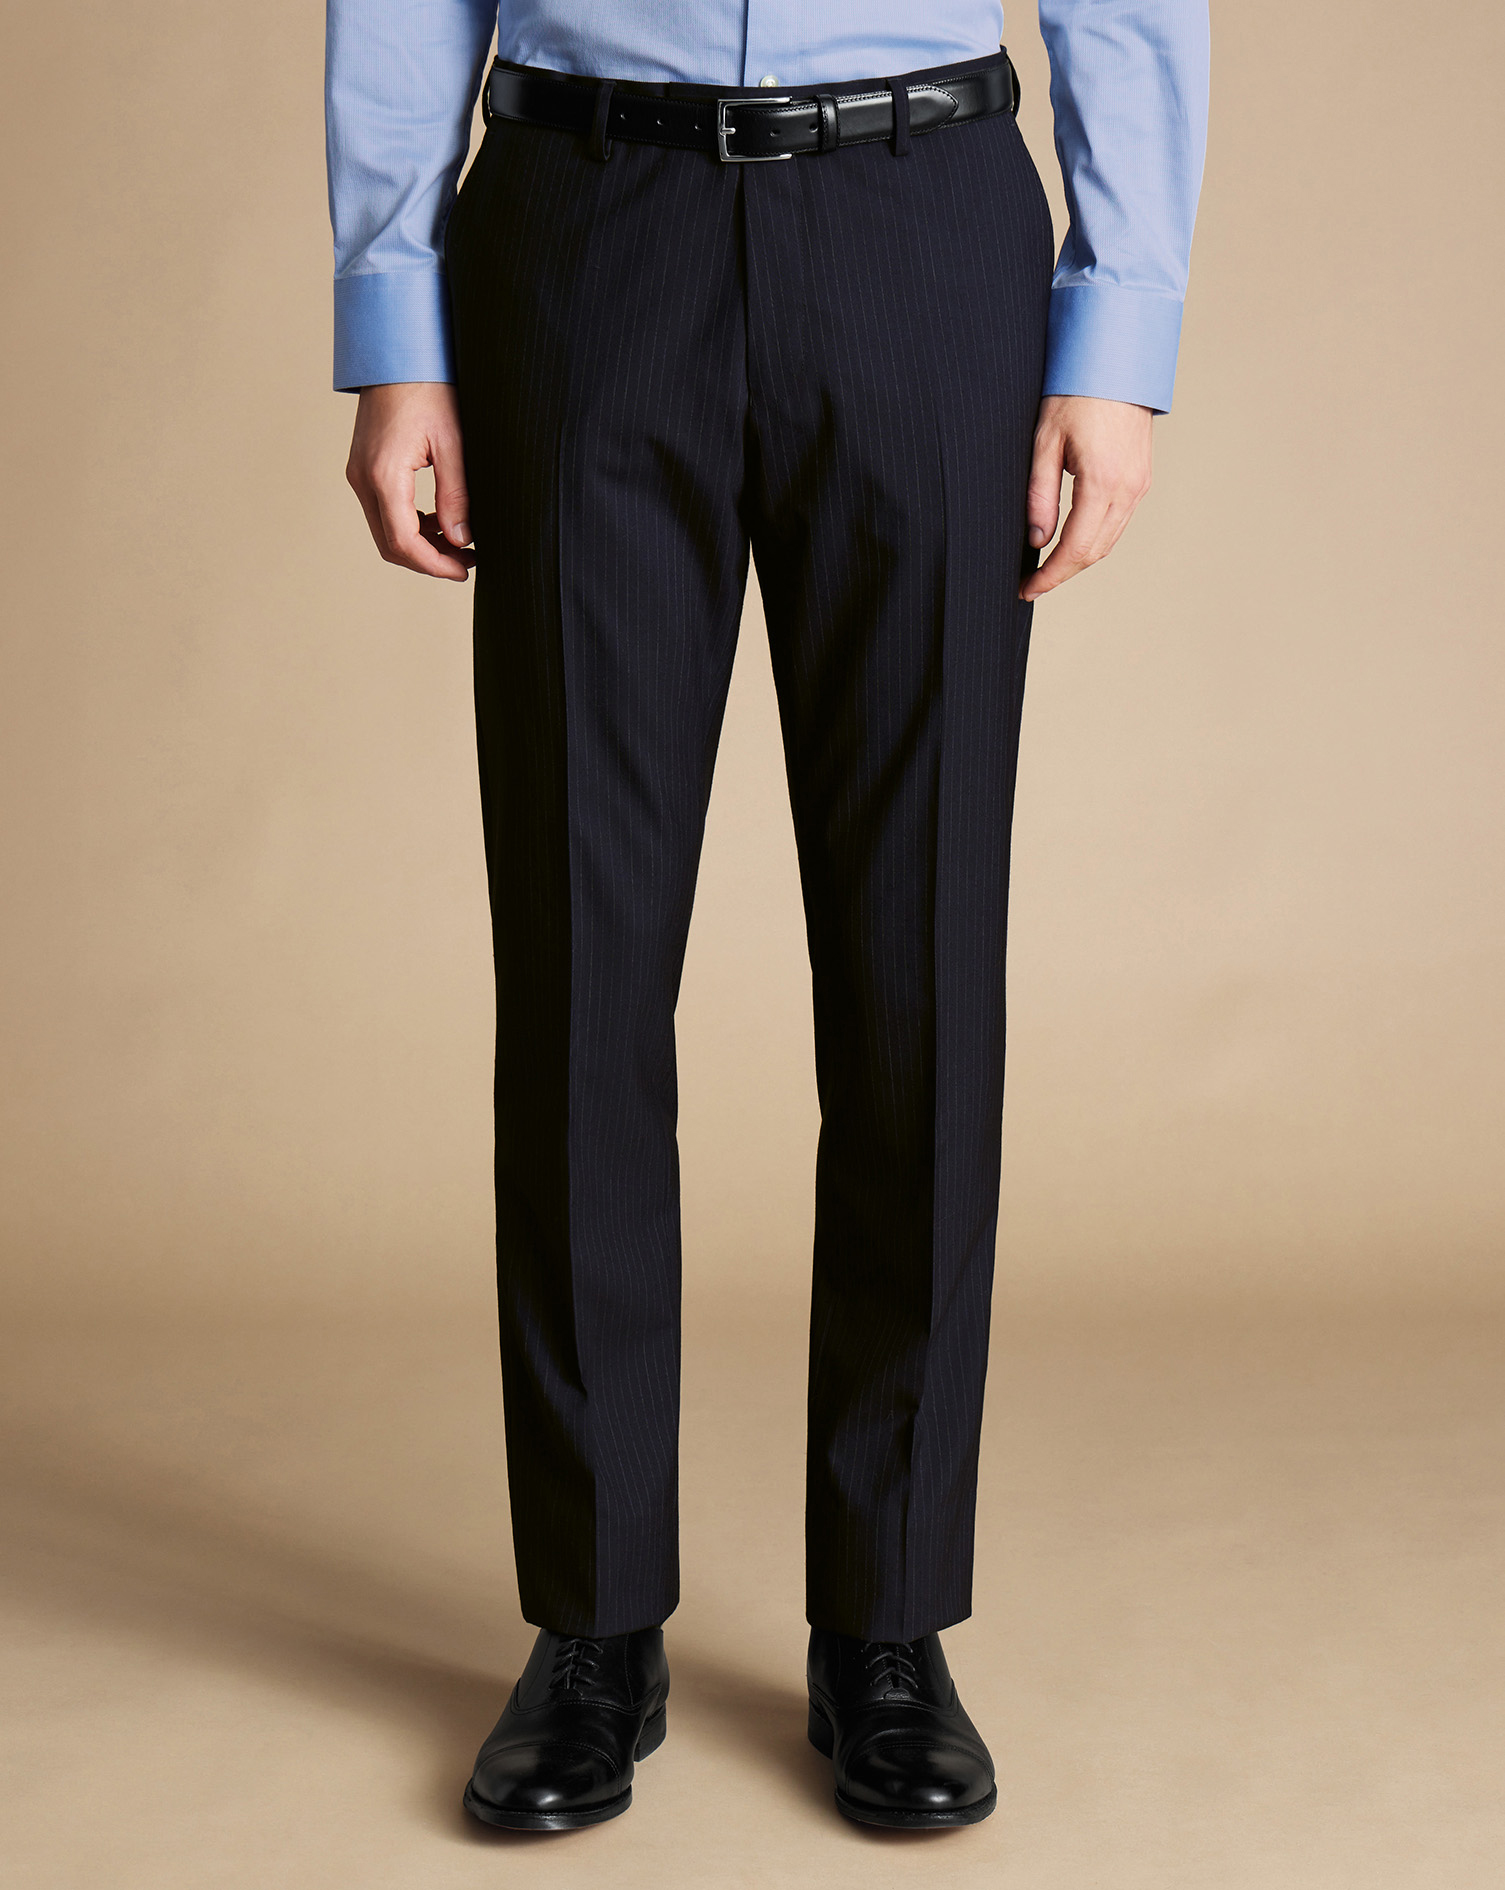 Men's Charles Tyrwhitt Ultimate Performance Stripe Suit Trousers - Dark Navy Size 36/30
